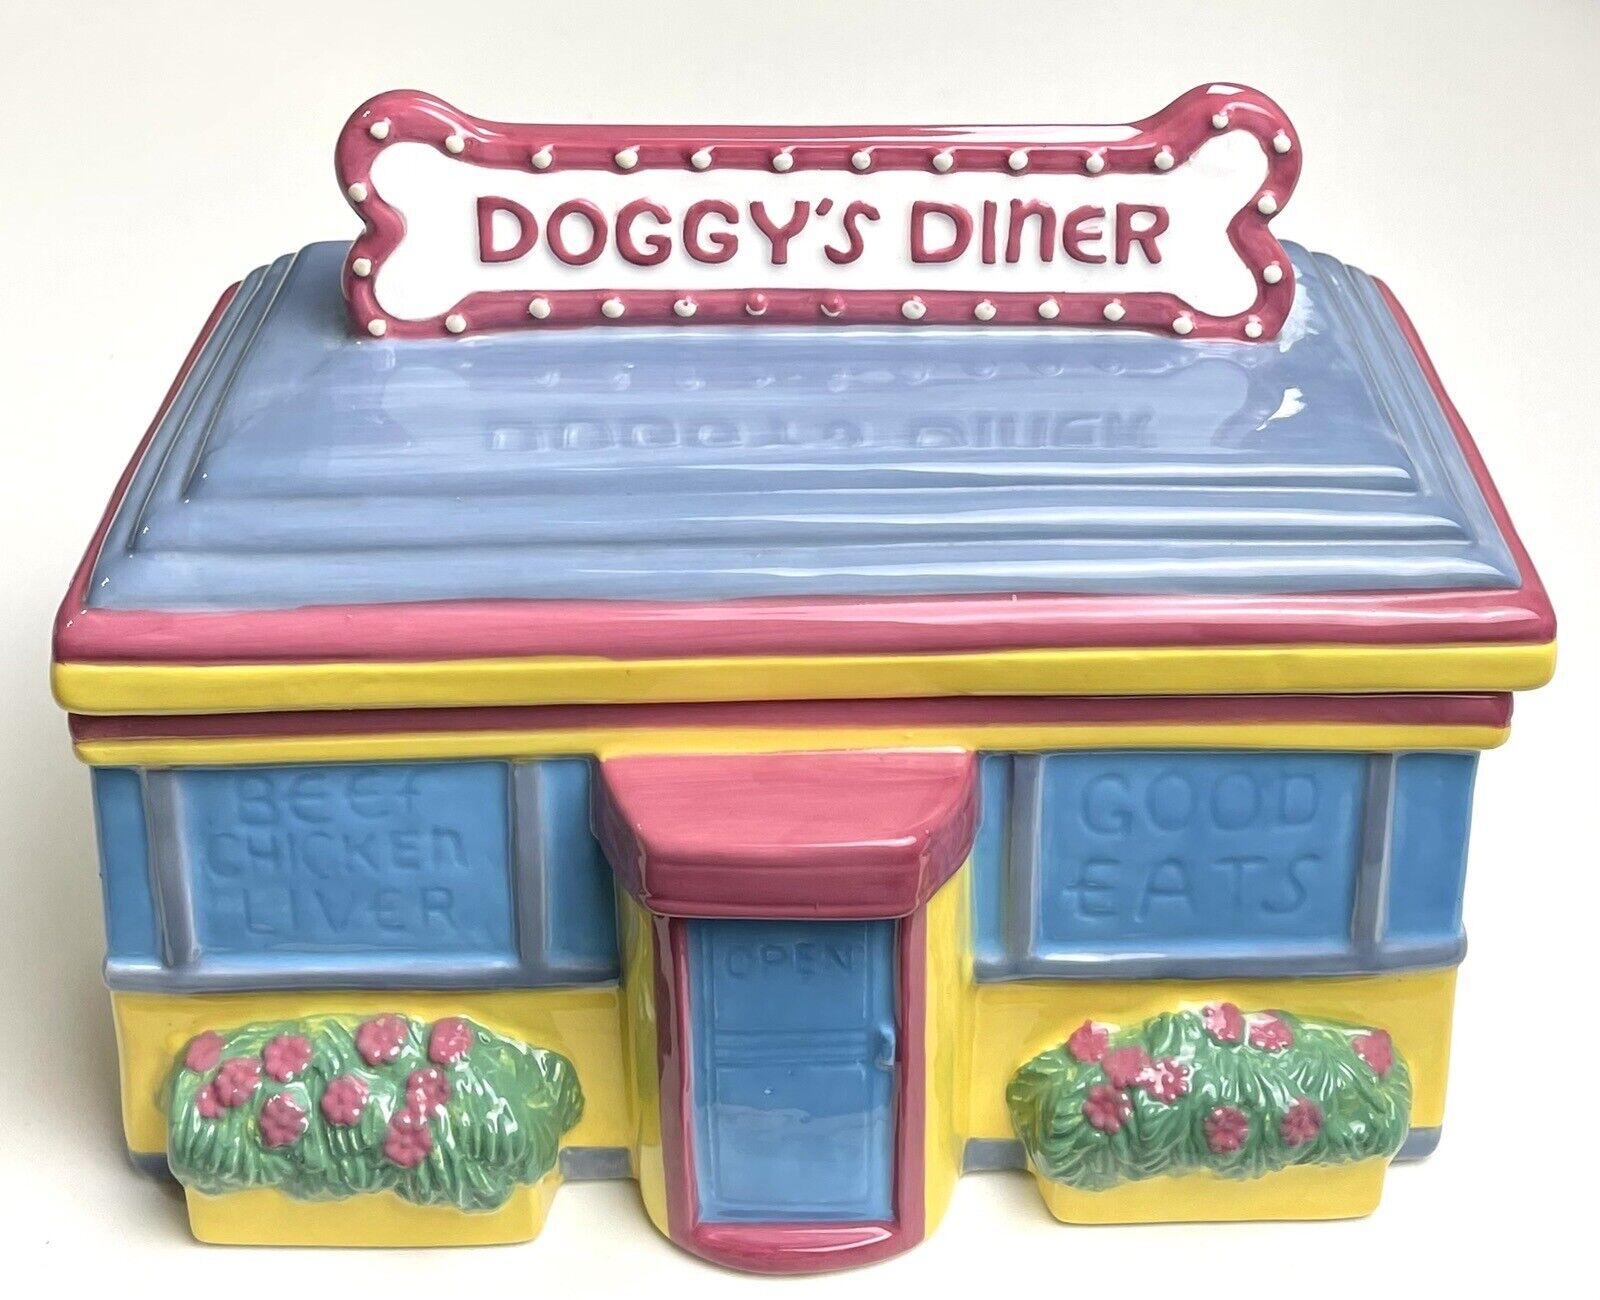 Vintage Omnibus Dog Treat Cookie Jar American Roadside Doggy Diner Ceramic